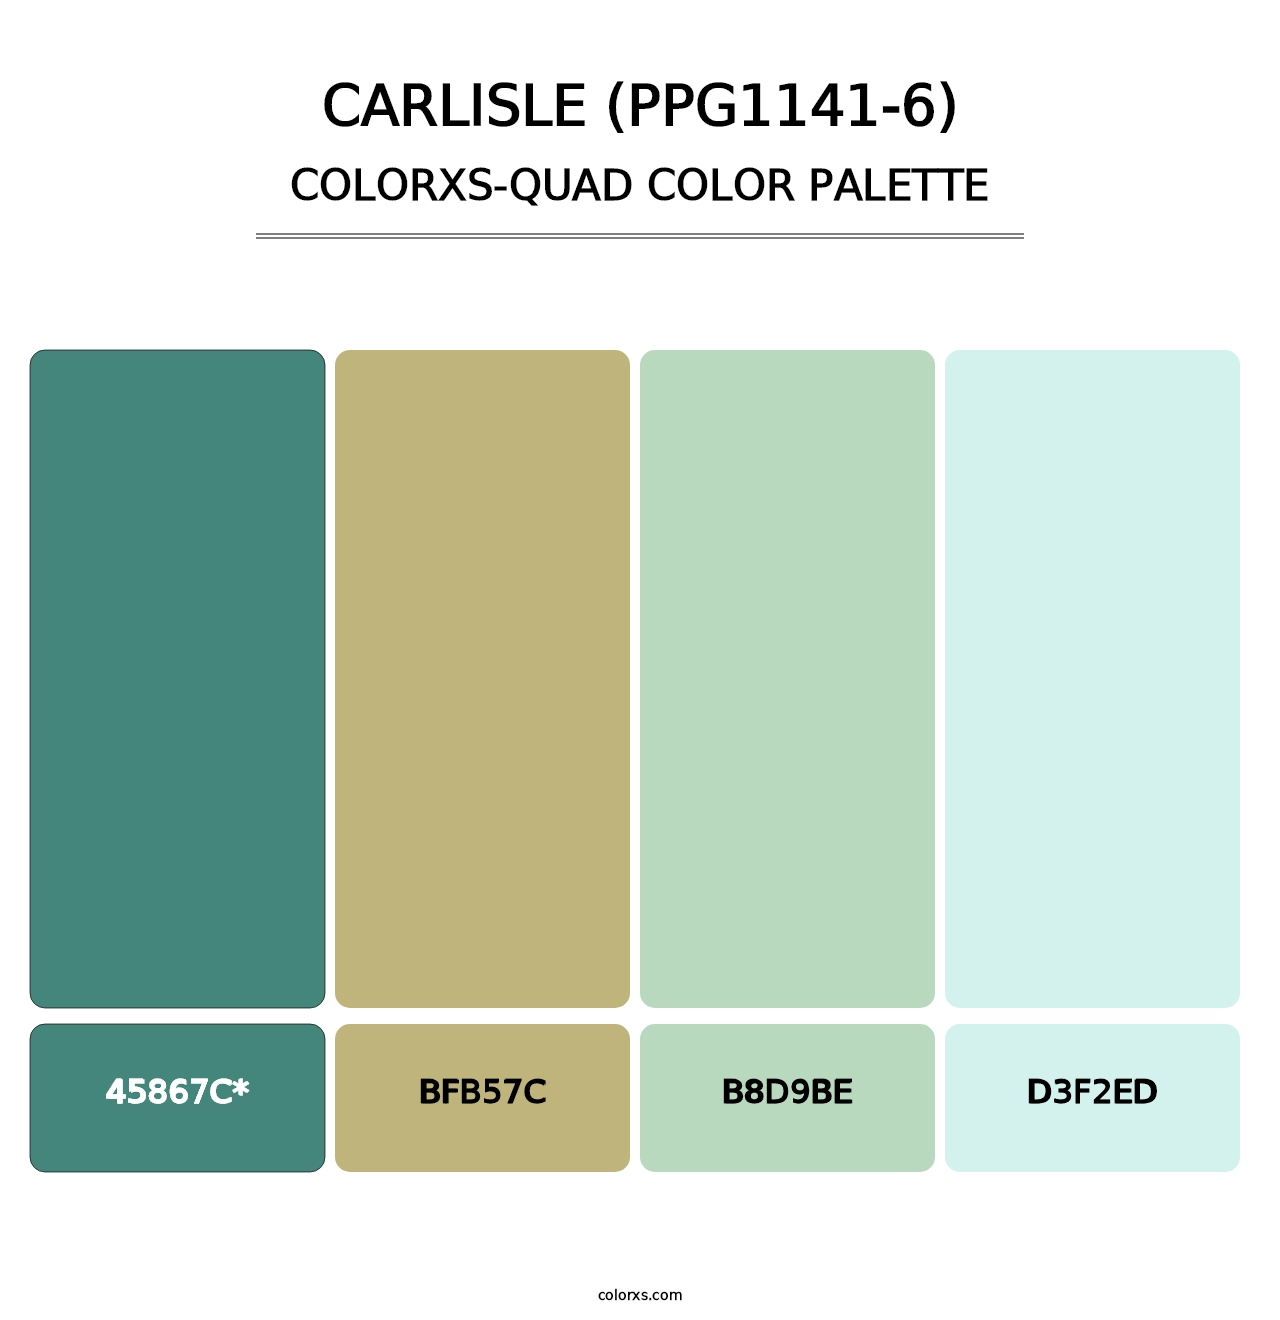 Carlisle (PPG1141-6) - Colorxs Quad Palette